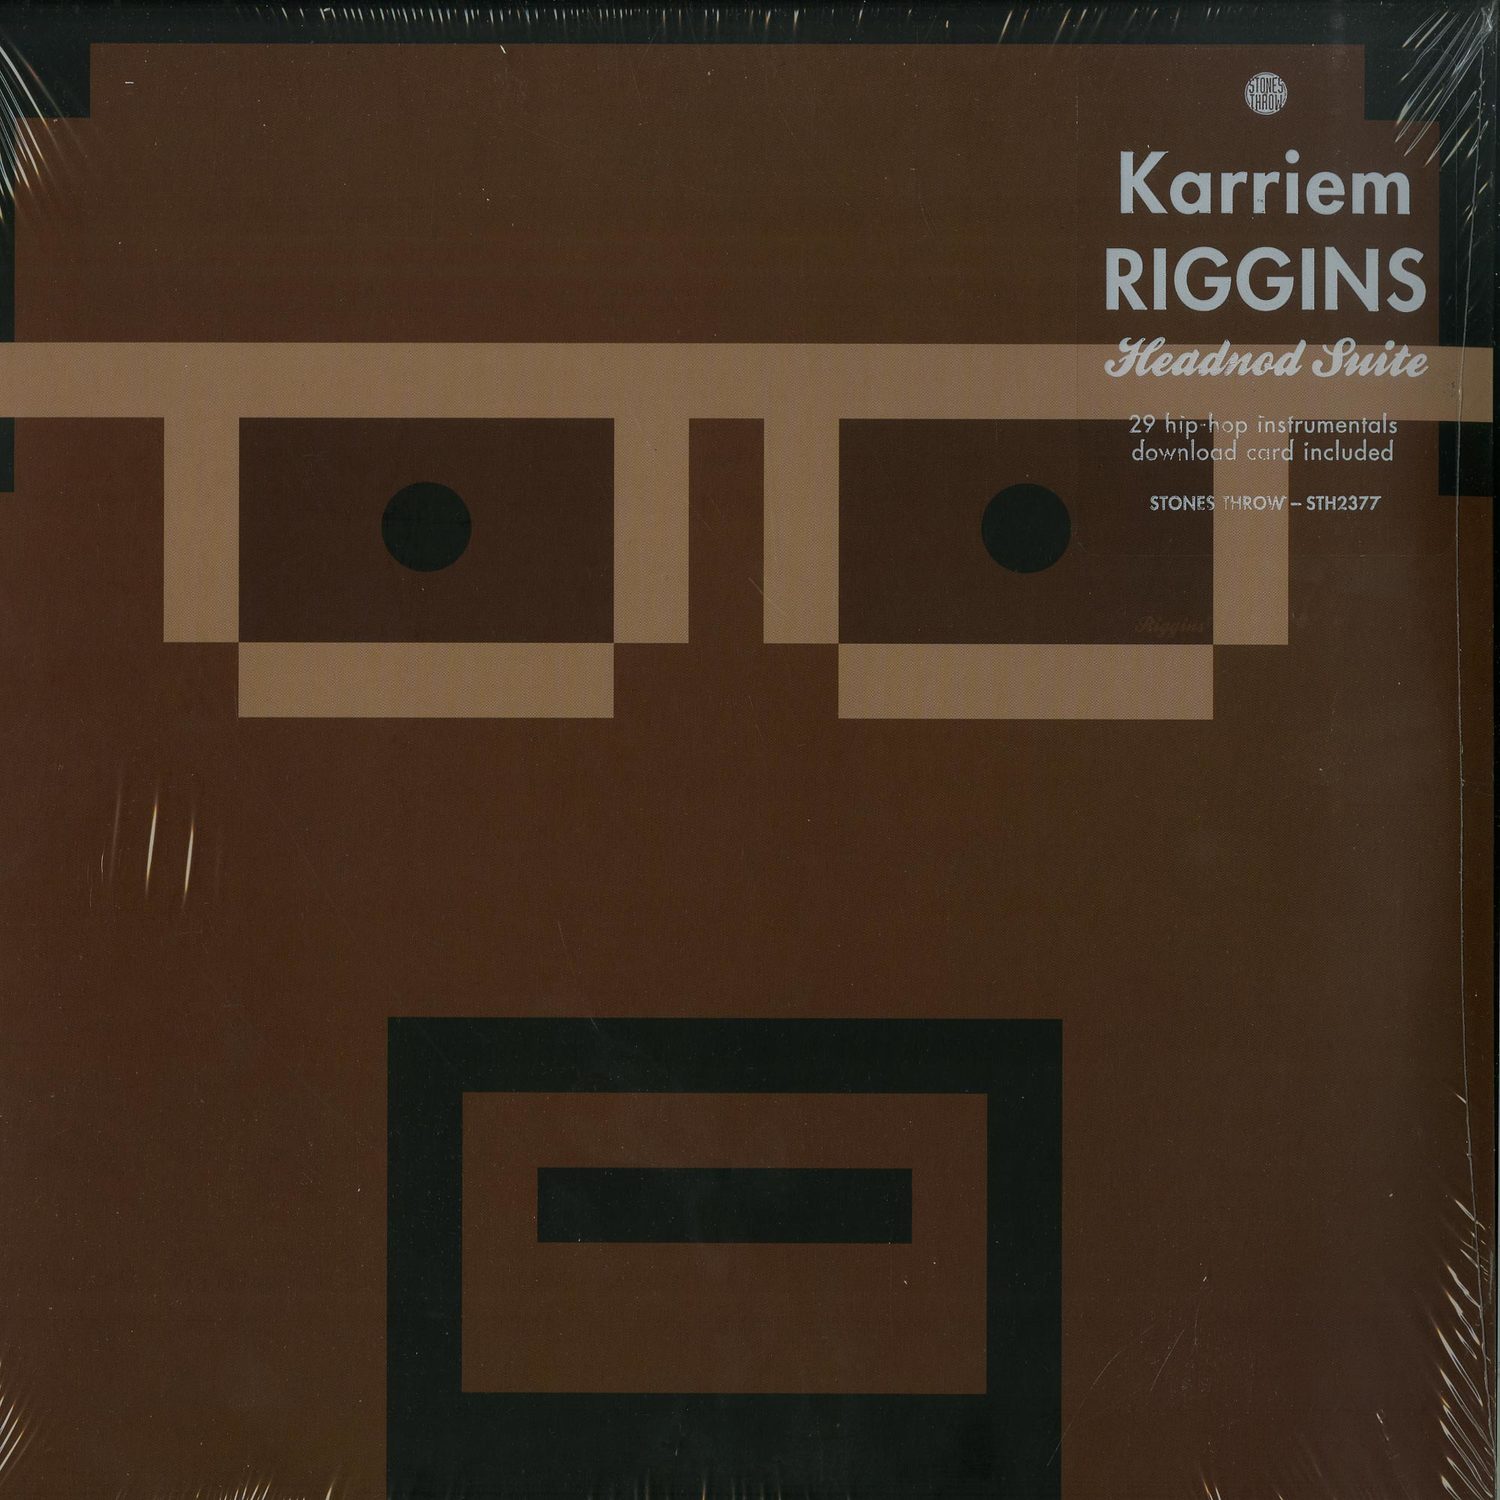 Karriem Riggins - HEADNOD SUITE 